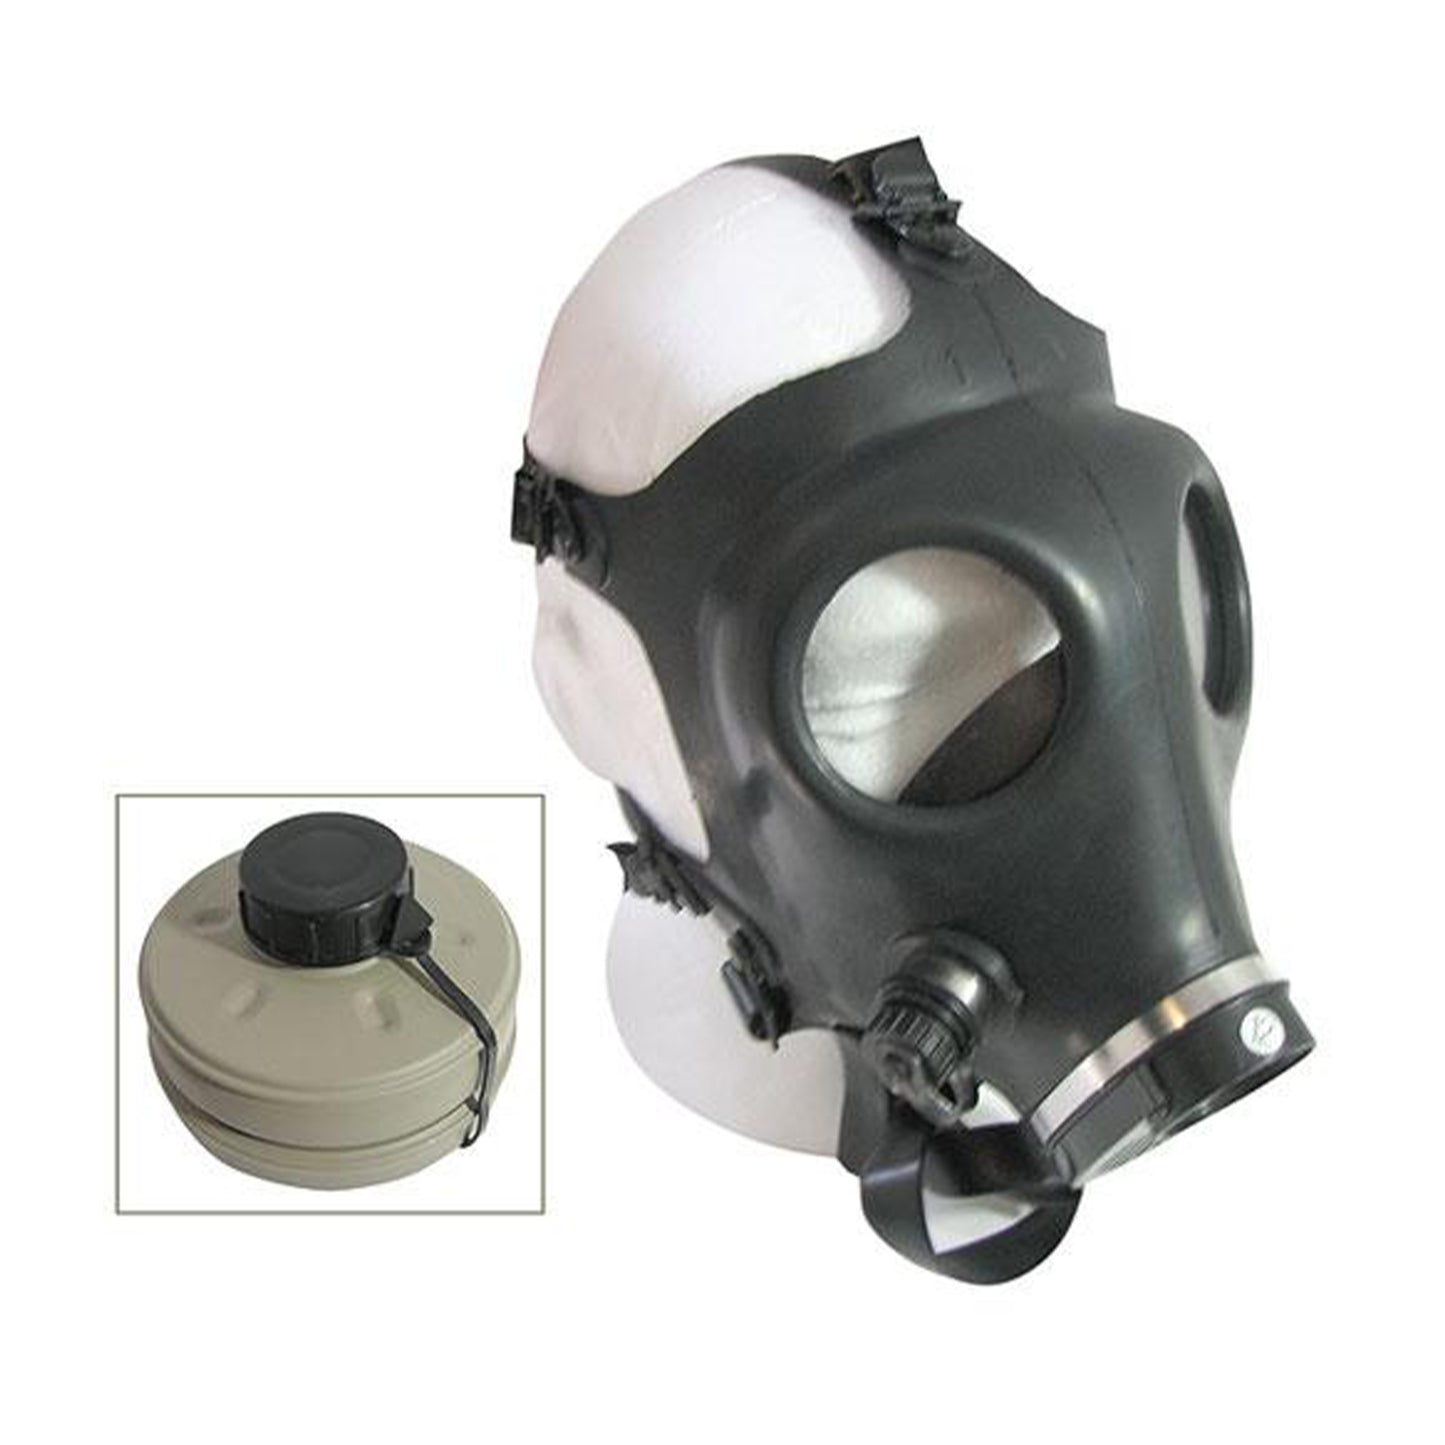 Israeli 4A1 Round Eye Gas Mask